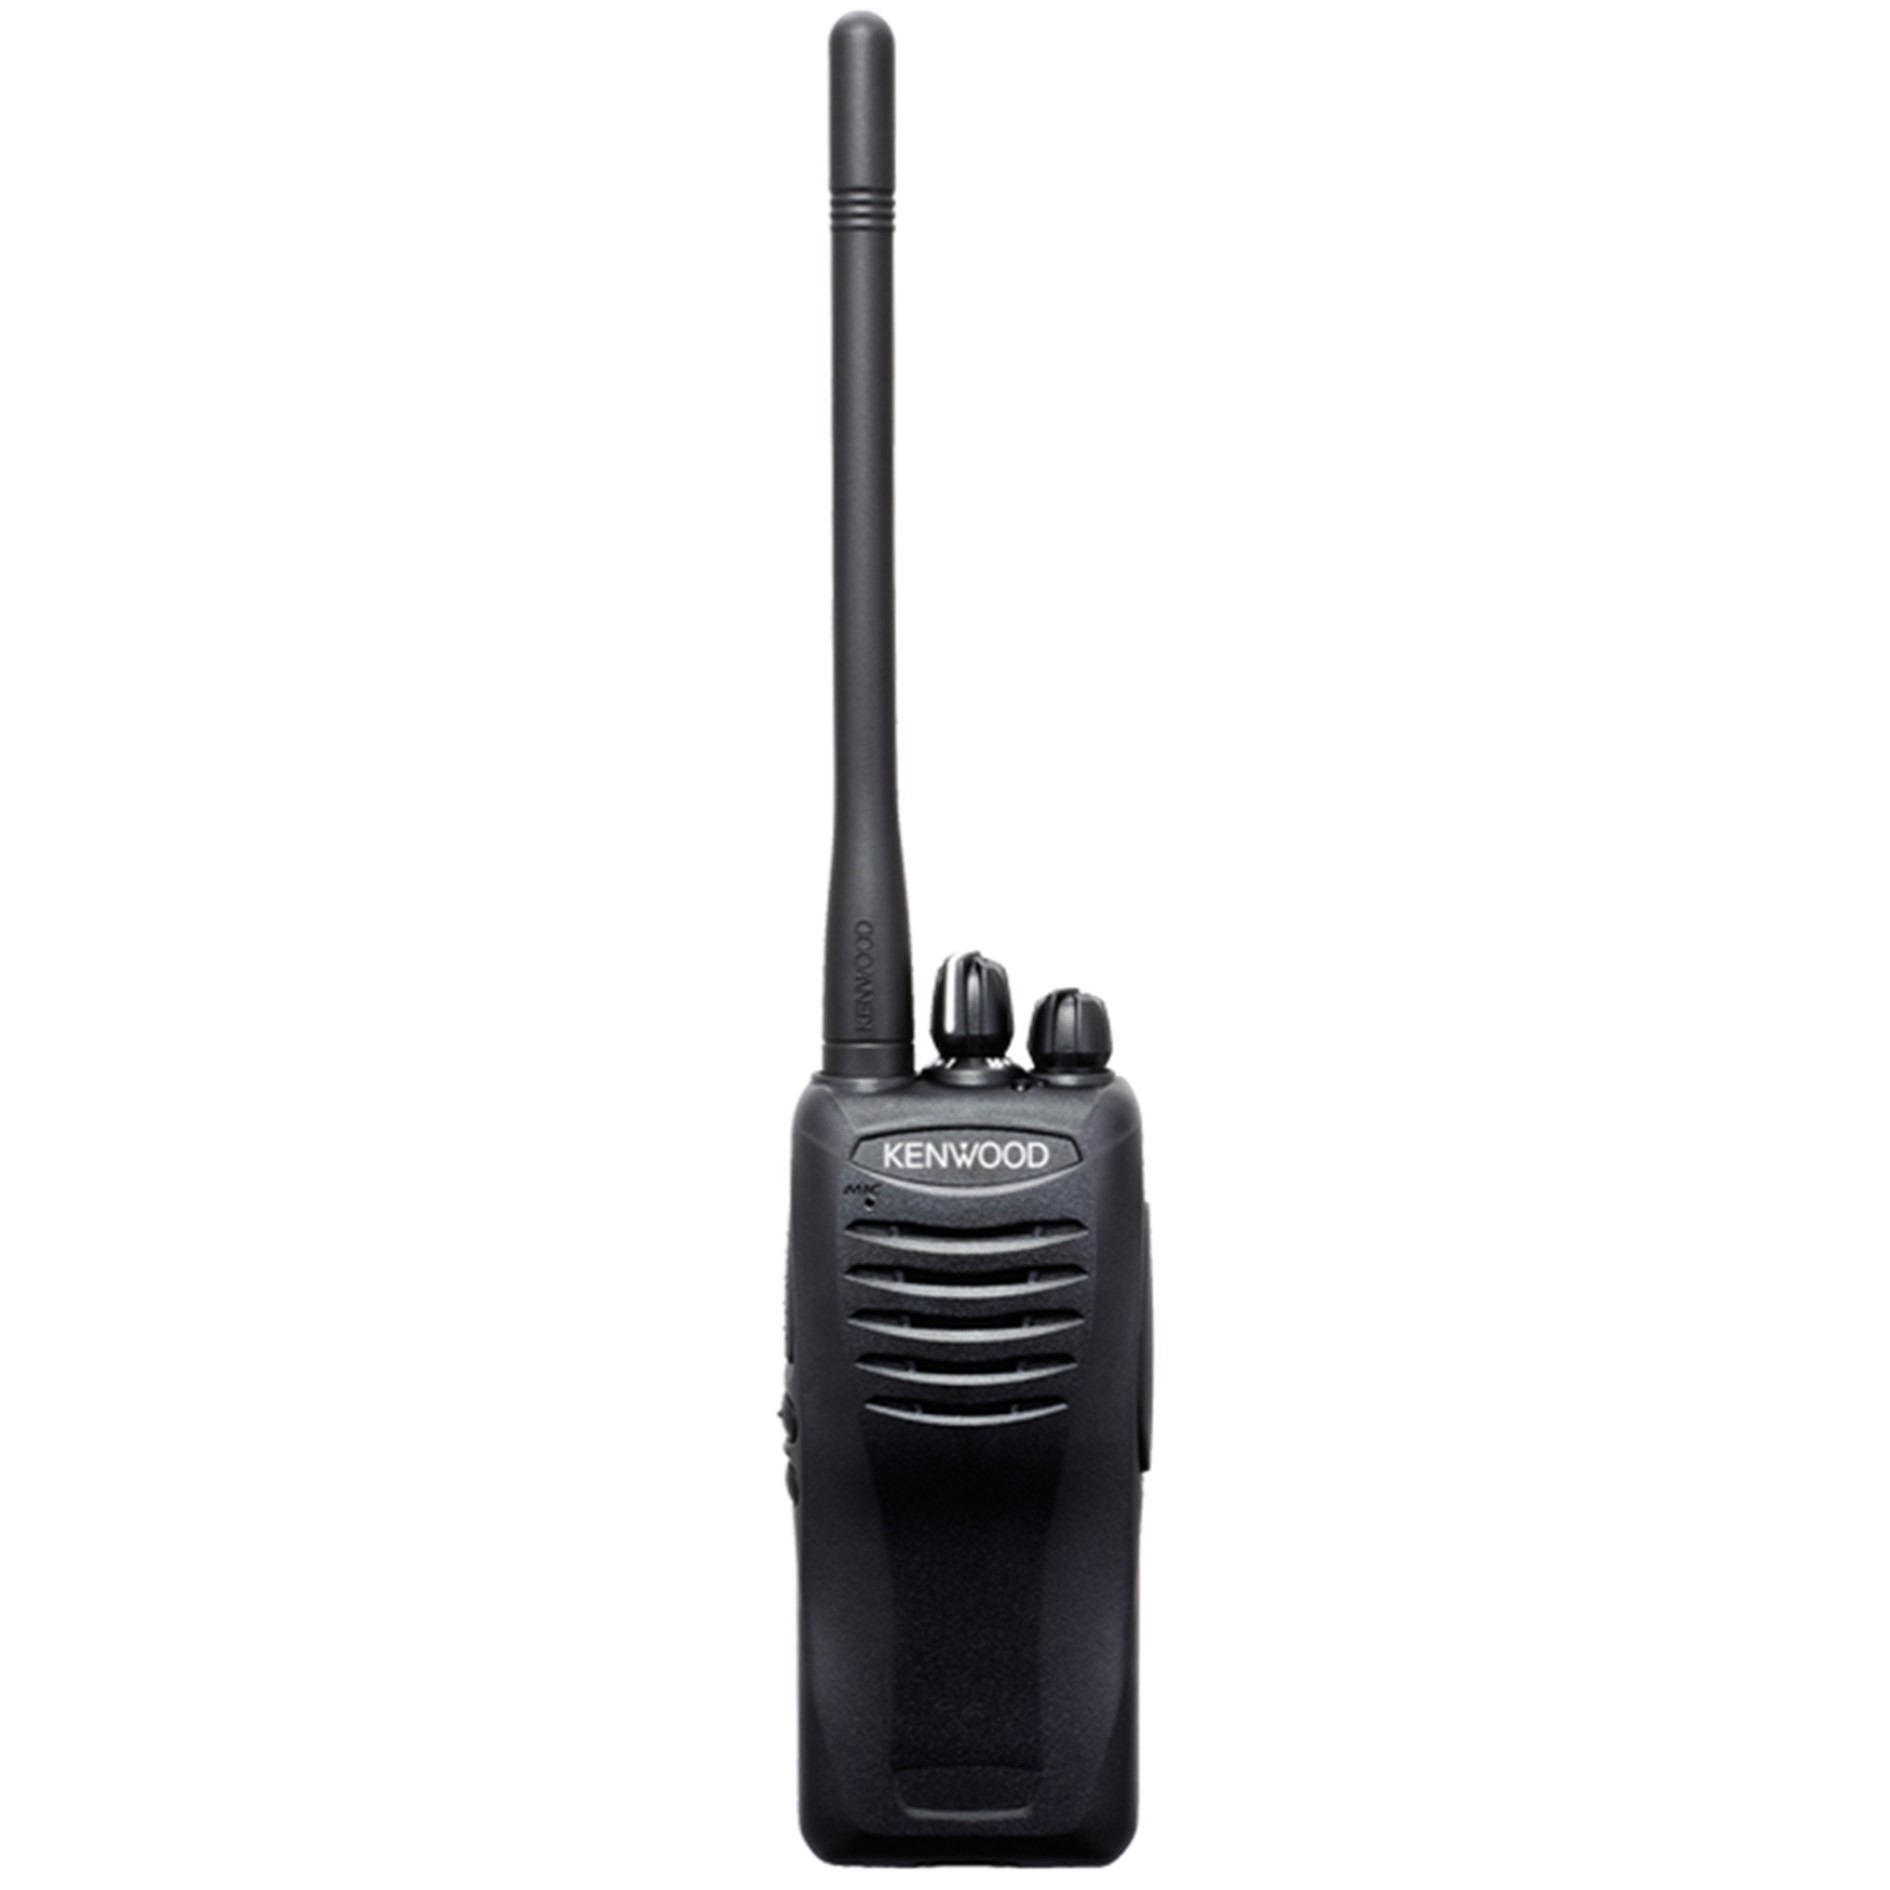 Perder entrada contaminación TK-2402K – Kenwood Radio Portátil Profesional VHF, 16 Canales, 5 Watts,  Negro | abc radios